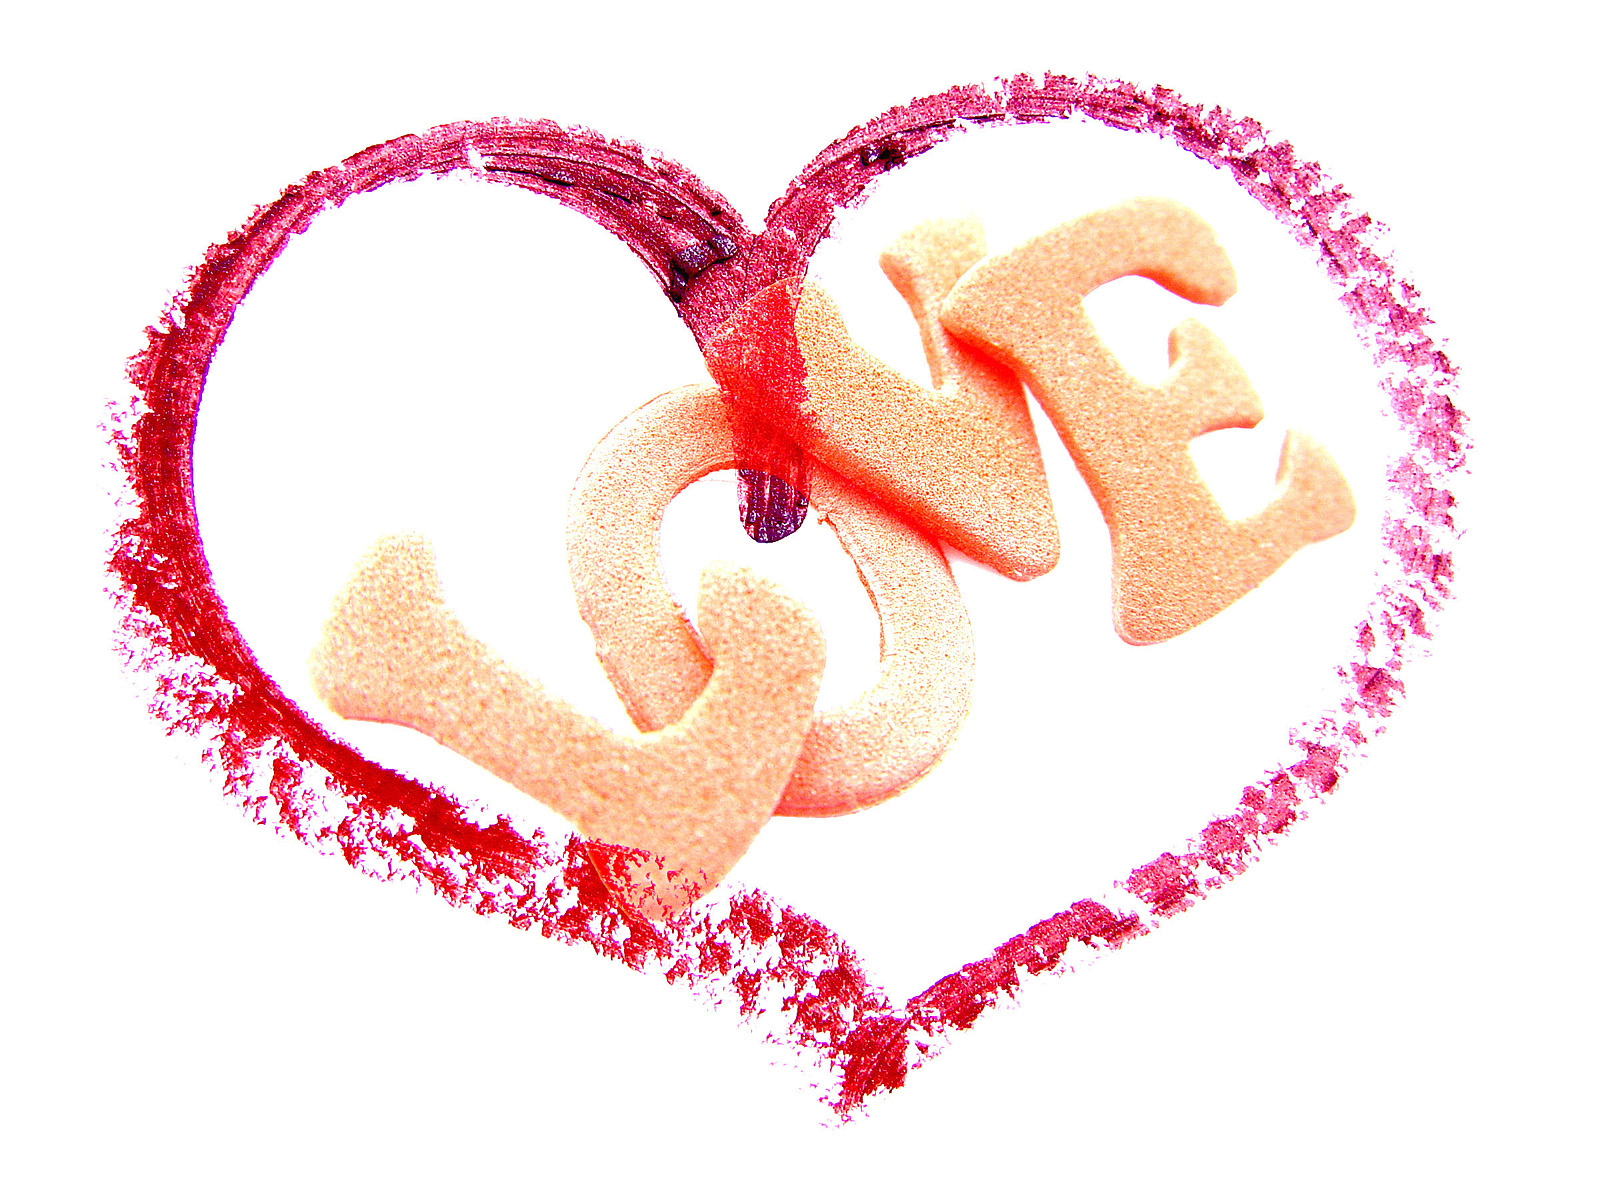 Valentine Heart Love